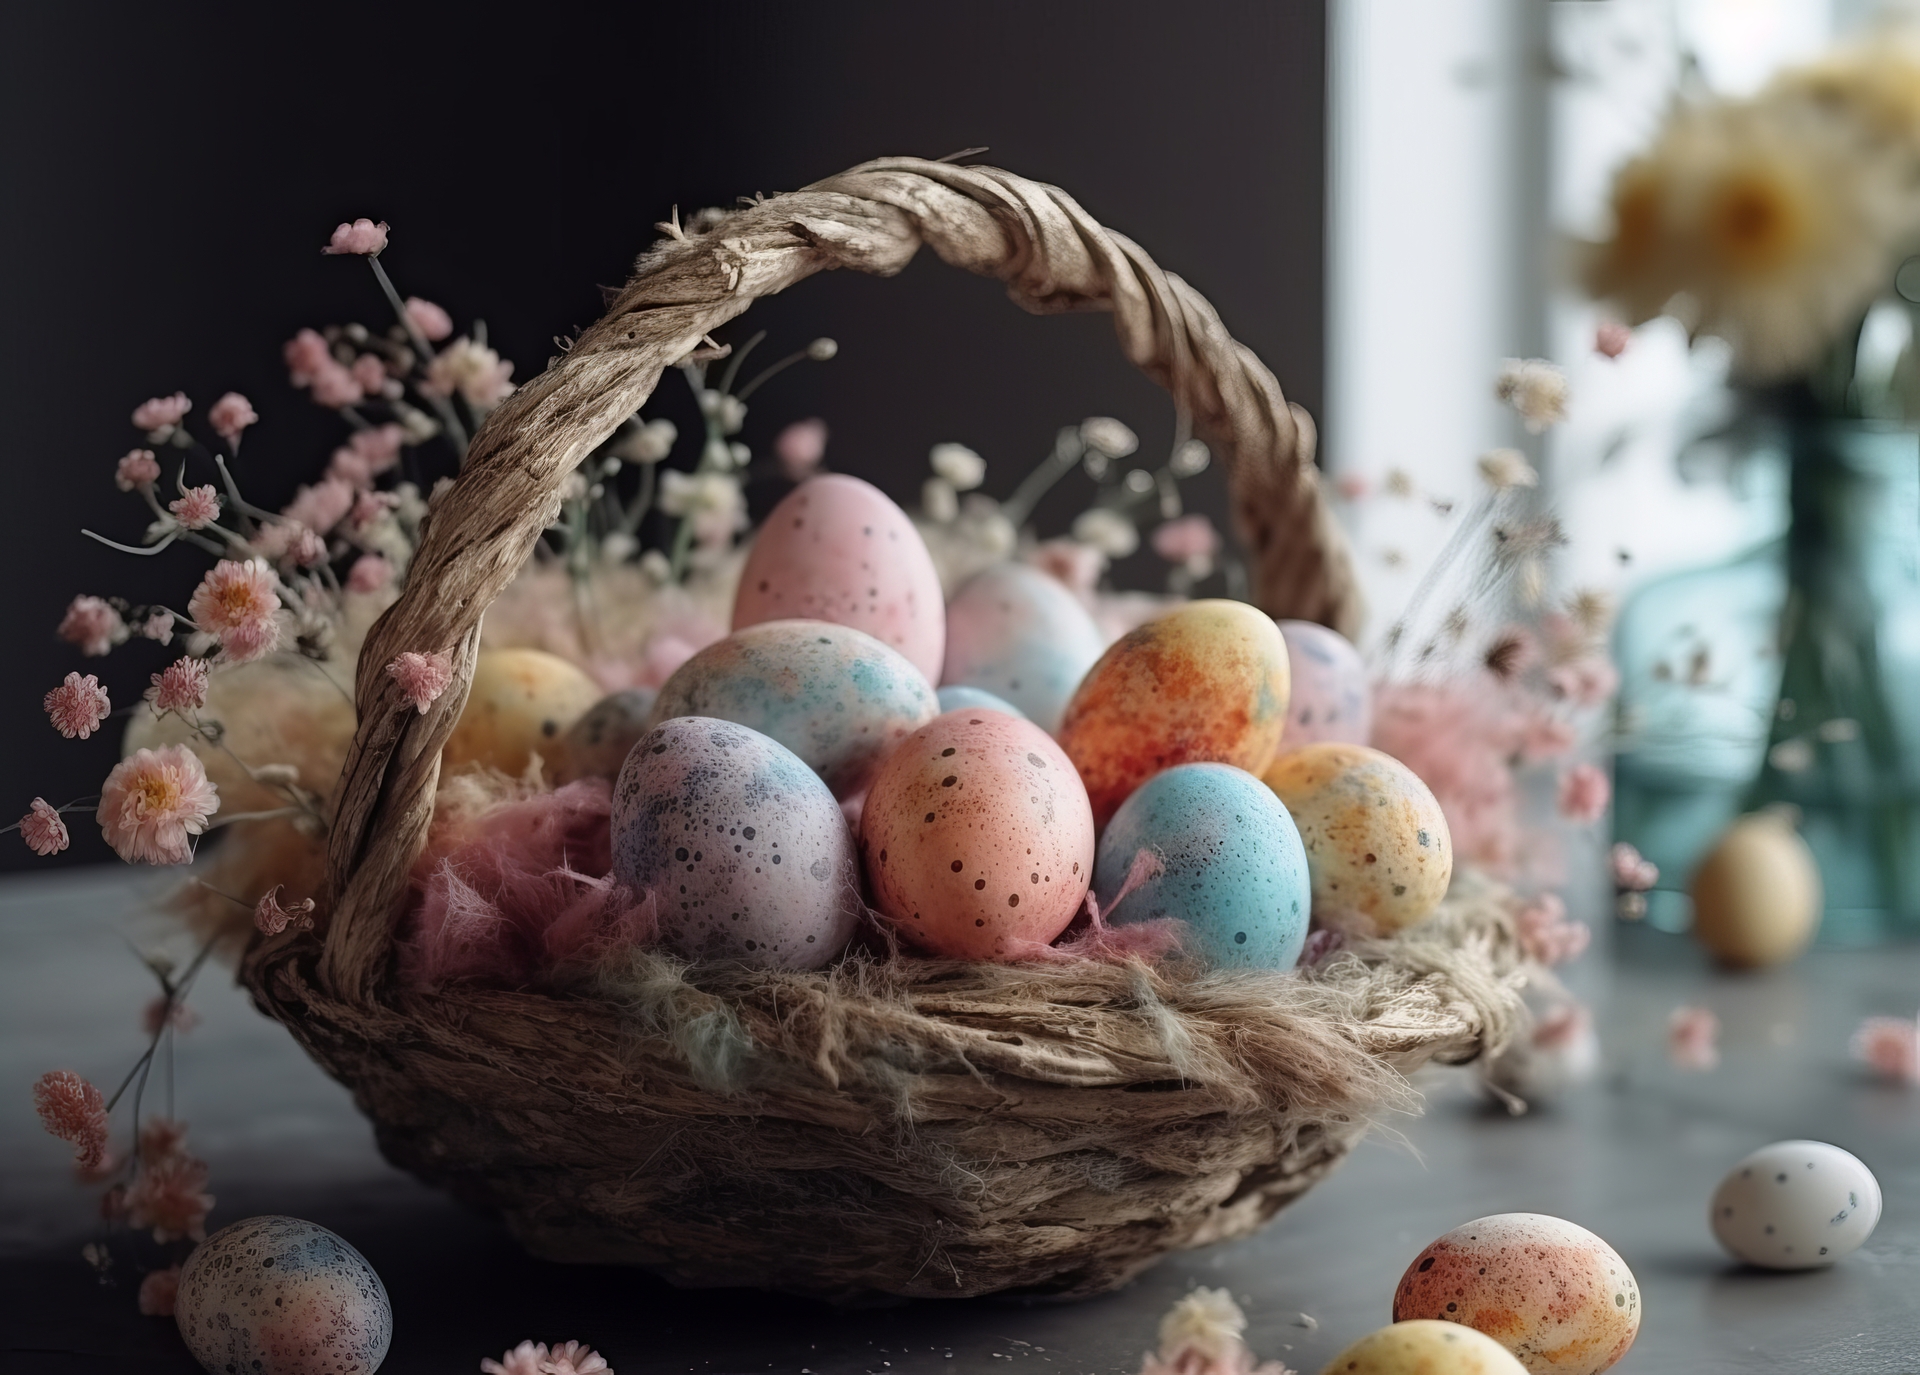 Na drewnianym stole widzimy wiklinowy koszyczek, który jest ozdobiony wiosennymi wstążkami i kwiatowymi motywami. Koszyczek jest symbolem obfitości i płodności, a także tradycyjnym elementem wielkanocnych obrzędów. Wewnątrz koszyczka znajdują się wielobarwne jajka, które zachwycają swoimi jaskrawymi barwami i misternymi wzorami. Każde jajko jest unikalne, malowane w różnych technikach i ozdobione artystycznymi motywami. Widzimy pasiaste wzory, kwiatowe dekoracje, delikatne kropeczki i inne detale, które dodają im wyjątkowego uroku